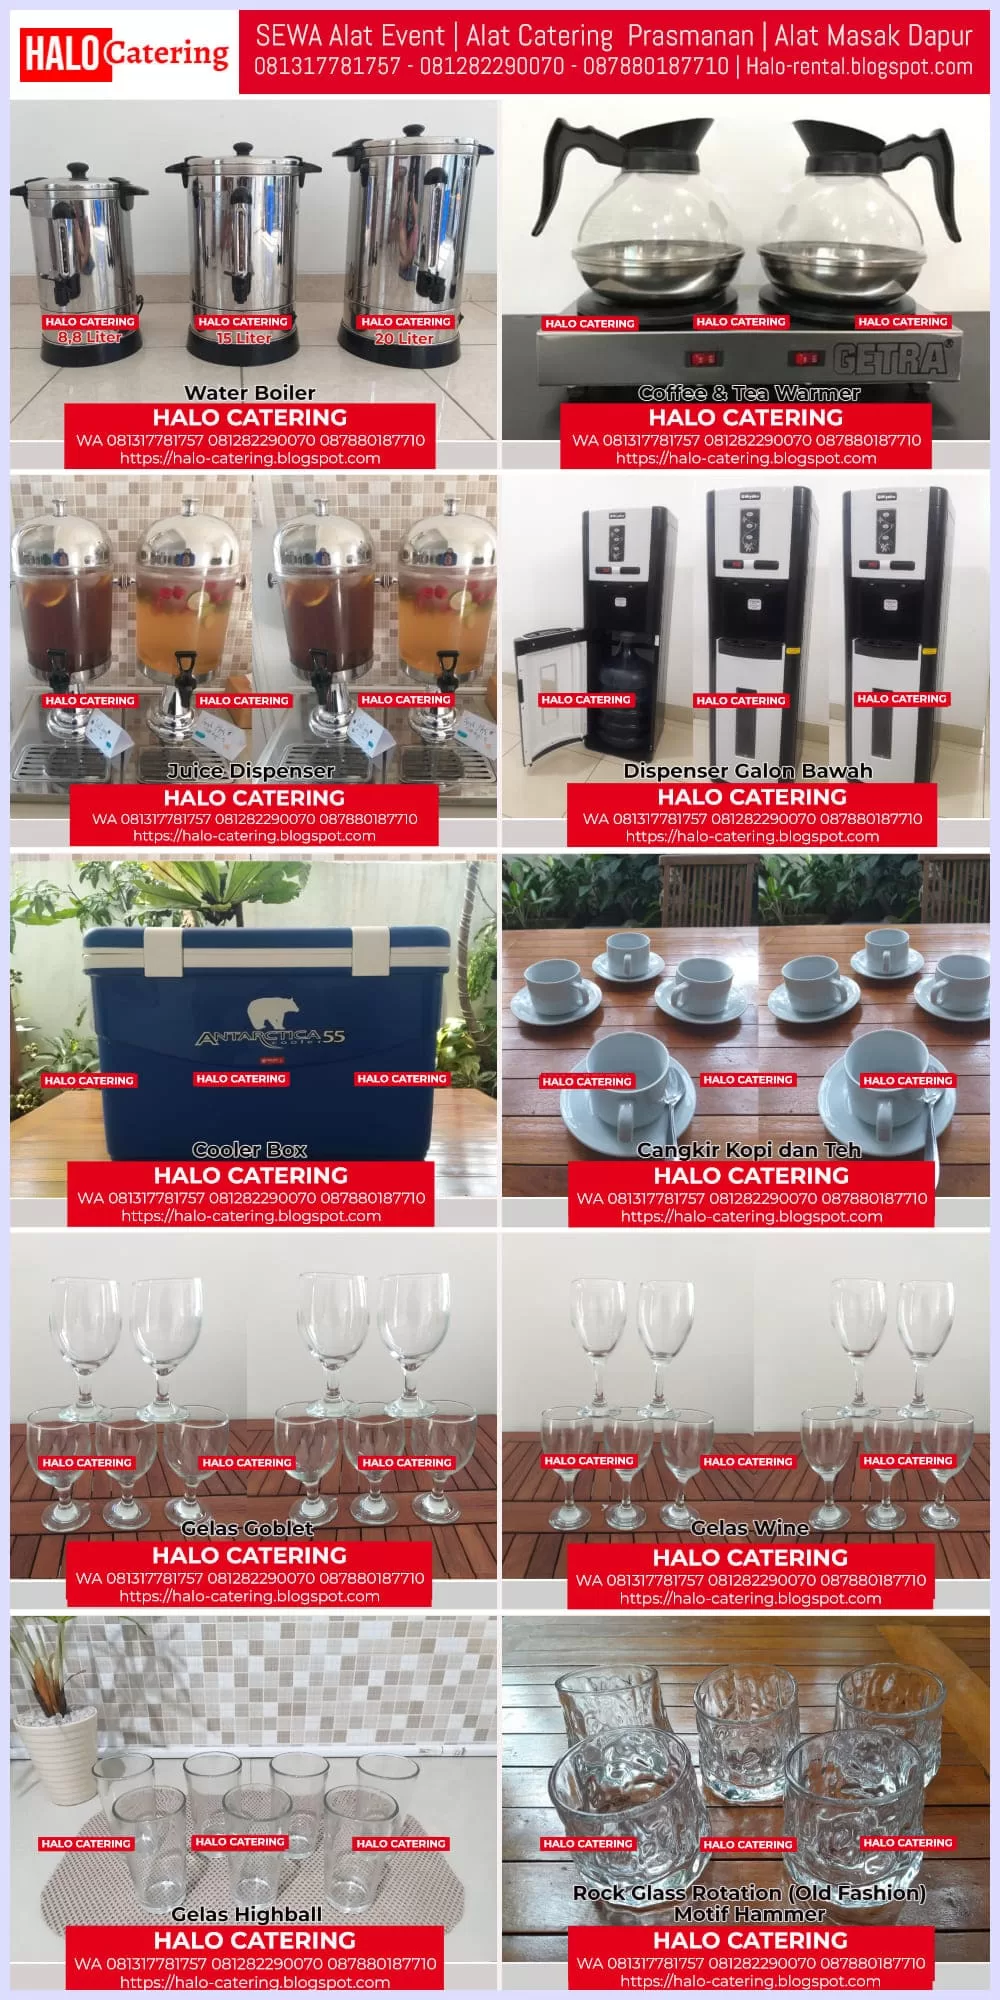 Persewaan Alat Minum Coffee Break Rental Alat Masak Dapur Sewa Peralatan Makan Penyewaan Alat Catering Prasmanan Harga Sewa Murah Terdekat Jakarta Tangerang Bekasi HALO CATERING Sewa Kompor Gas 2 Tungku Tangerang Selatan